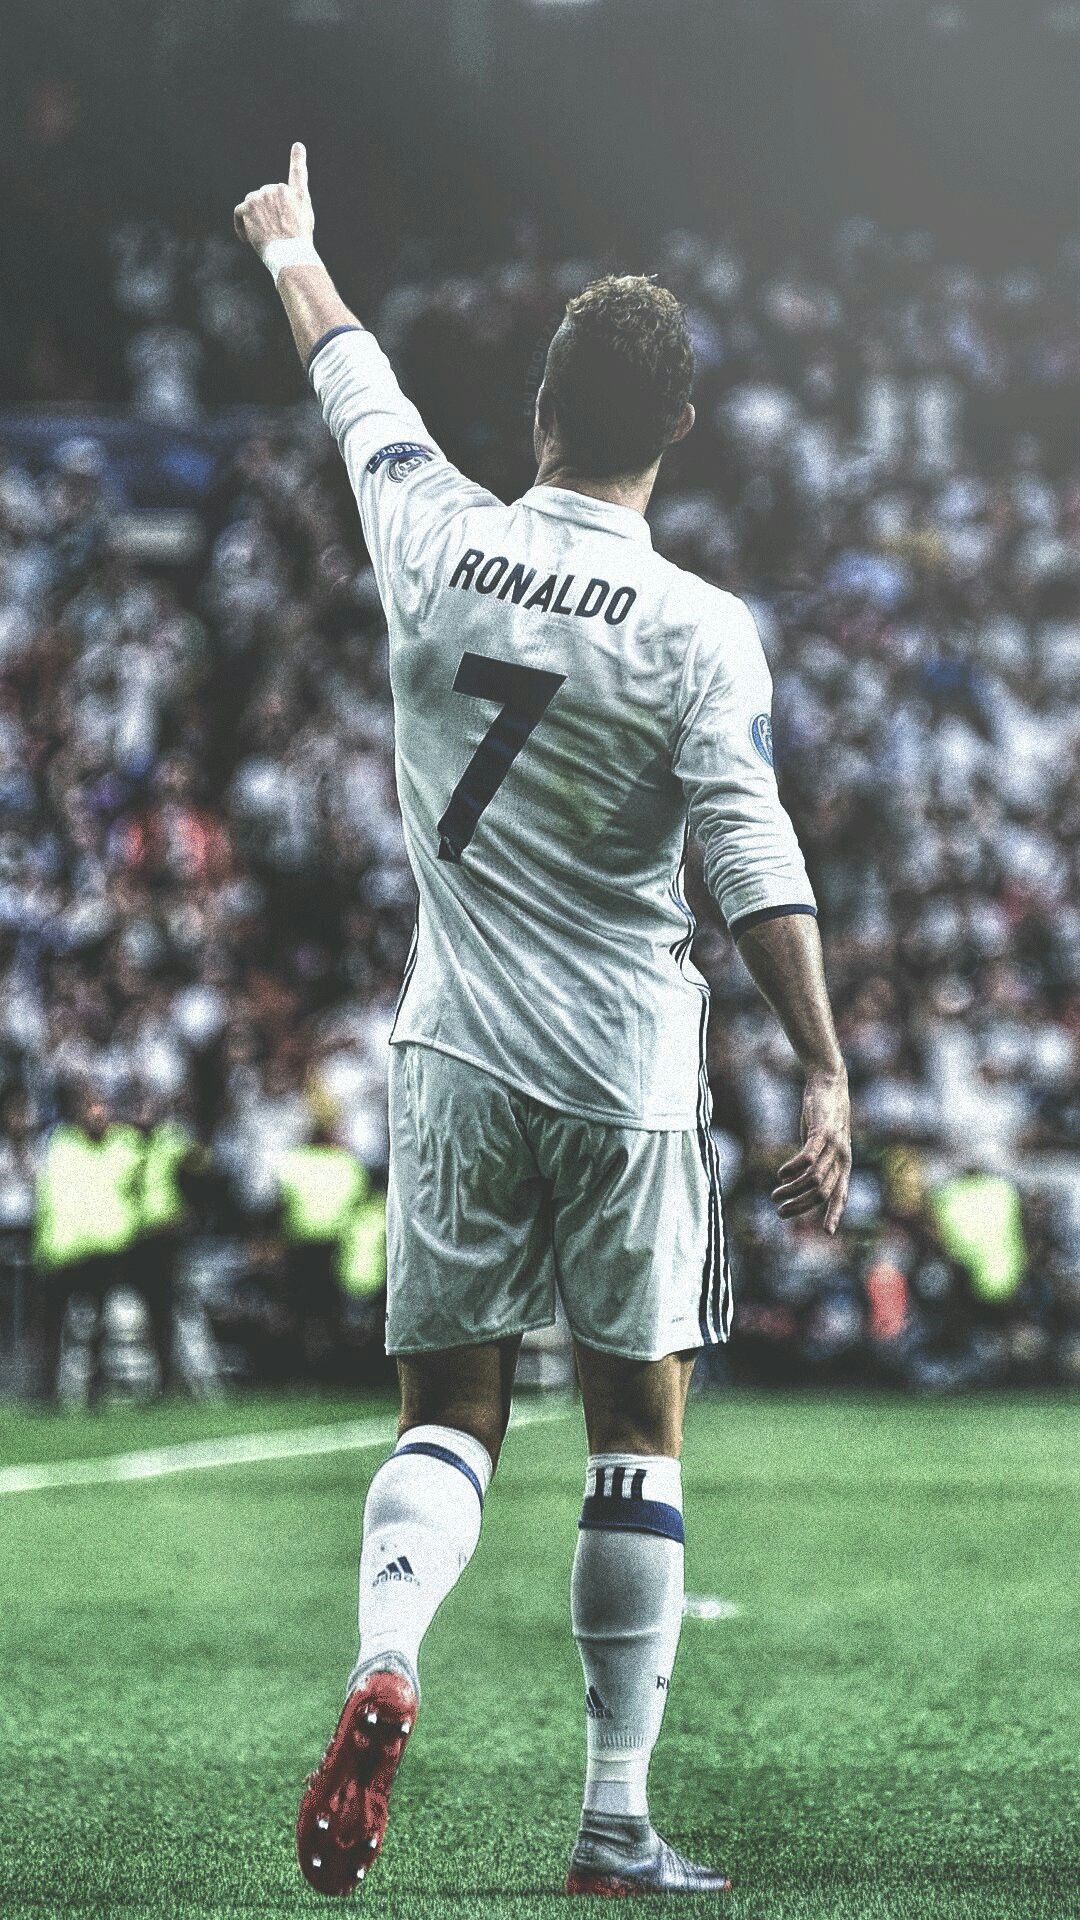 Ảnh nền Ronaldo rất đẹp nhất